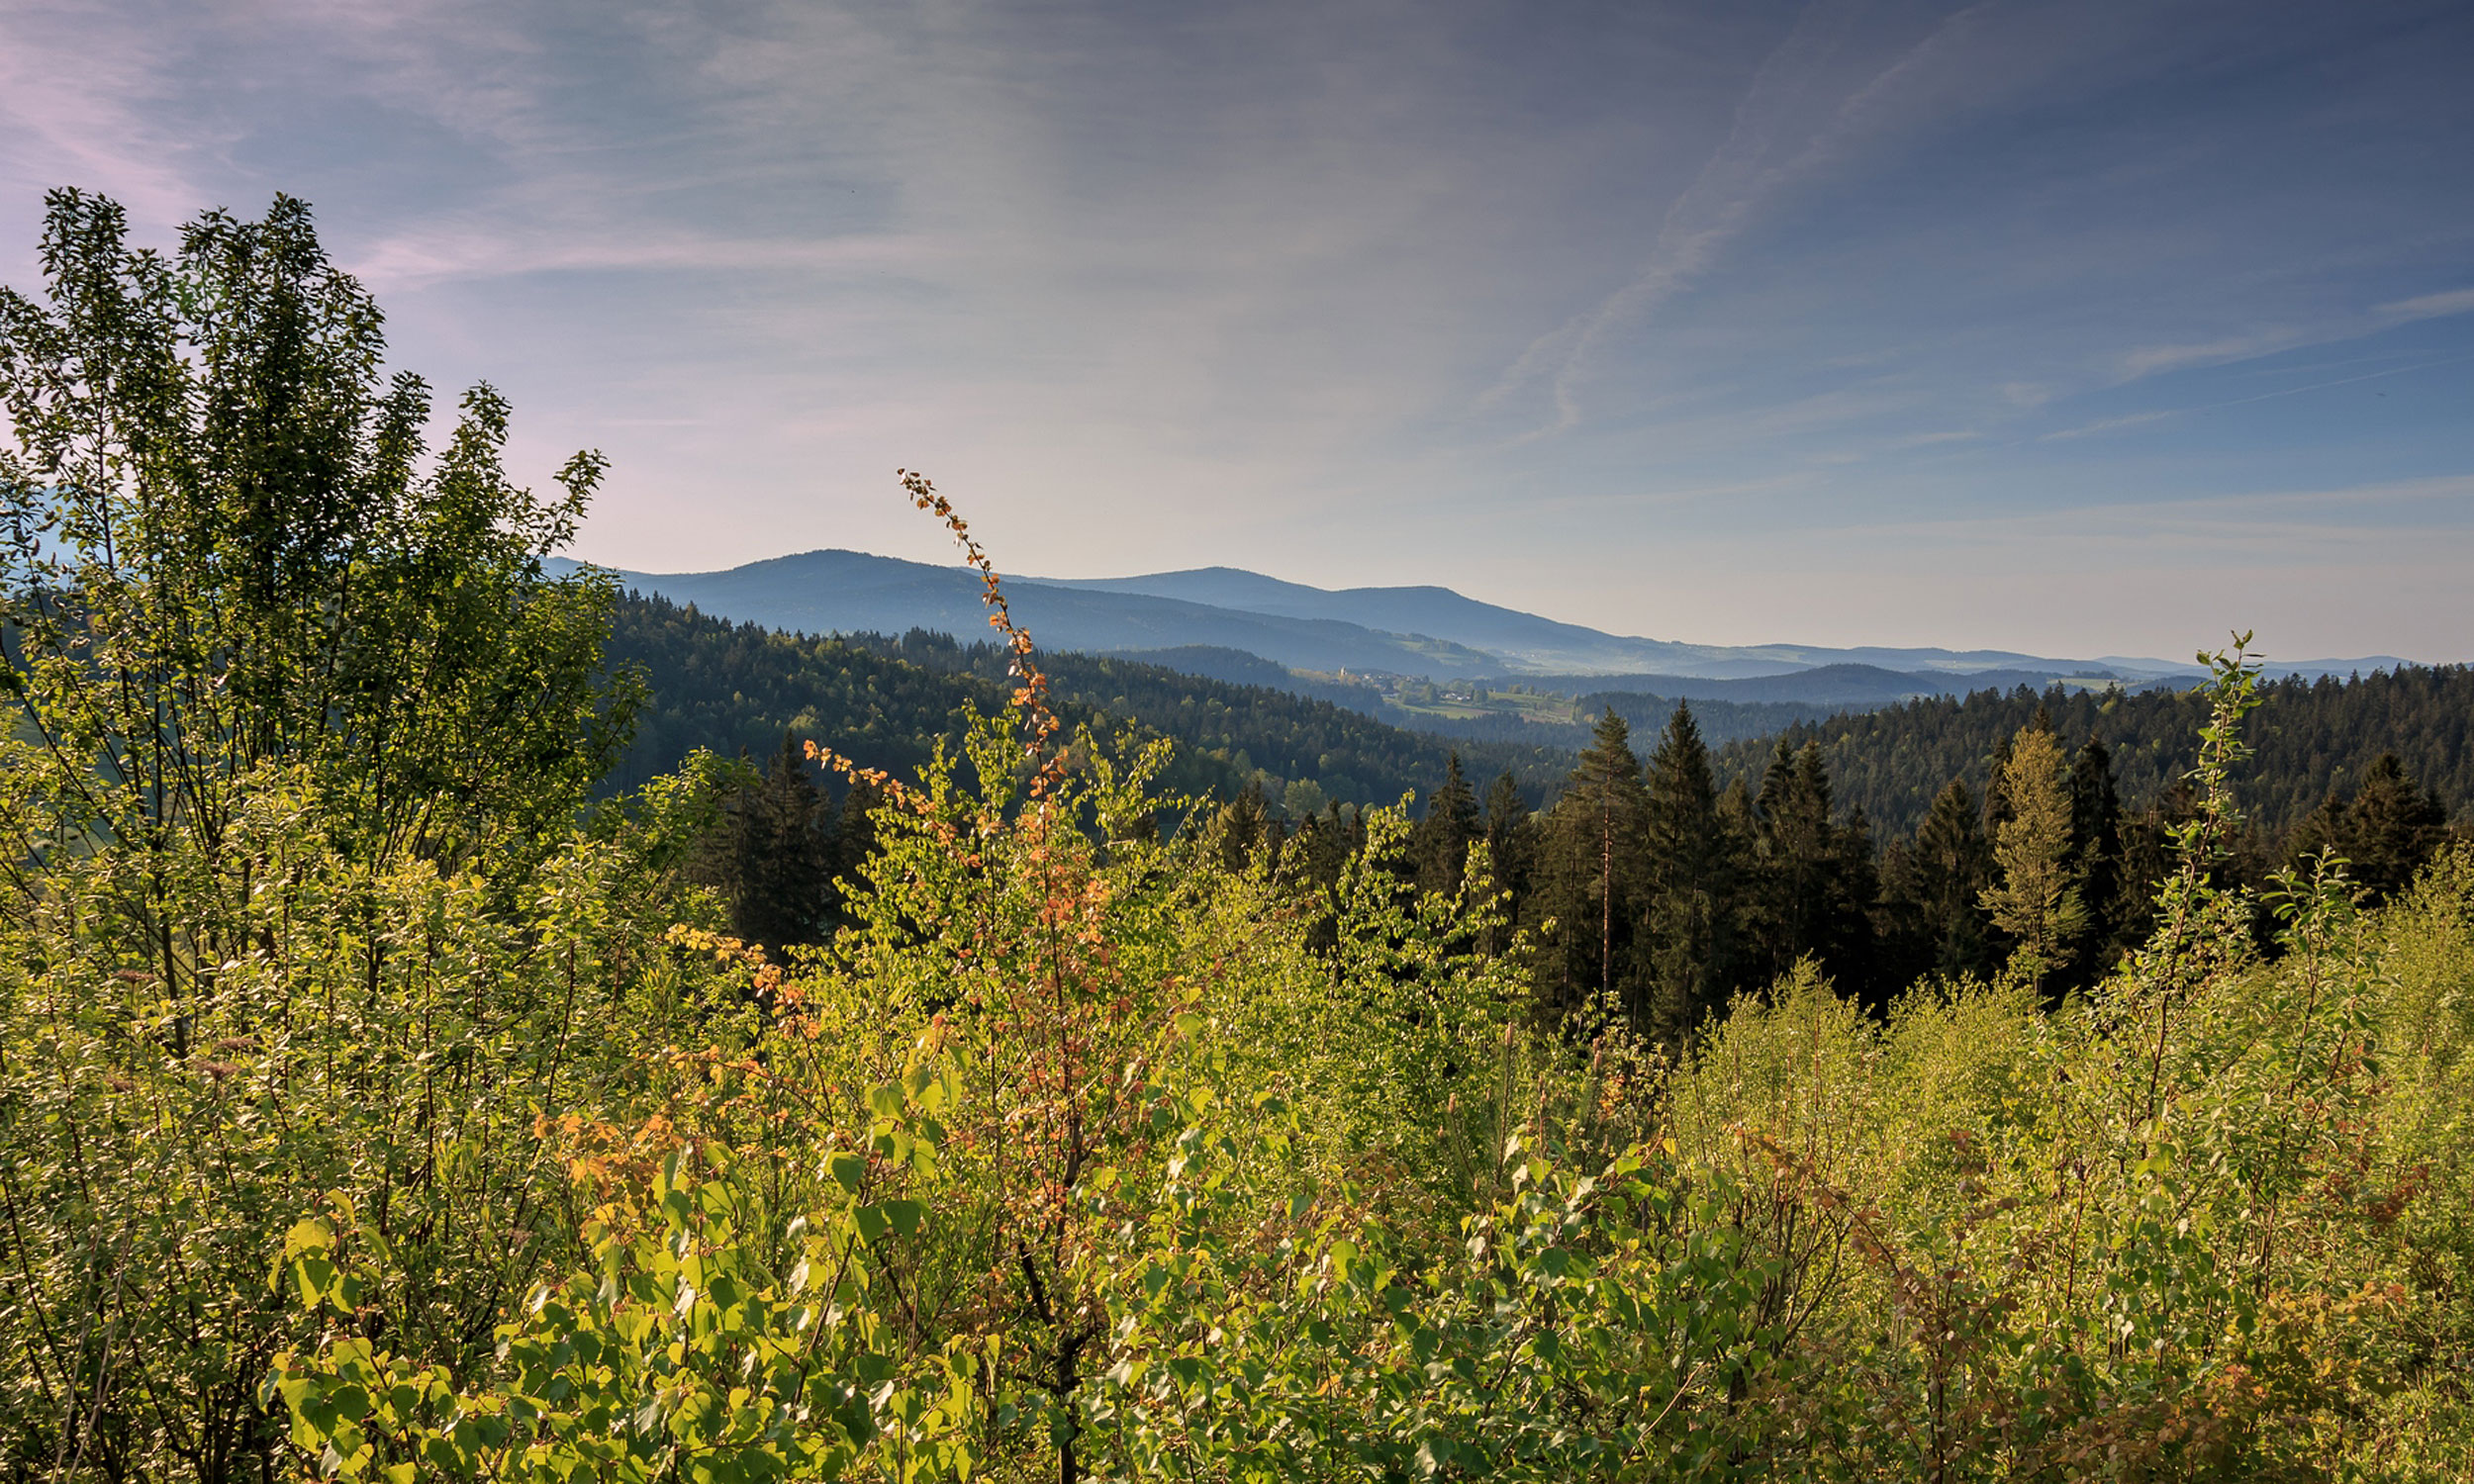 Freizeit- und Aktivmöglichkeiten im Bayerischen Wald